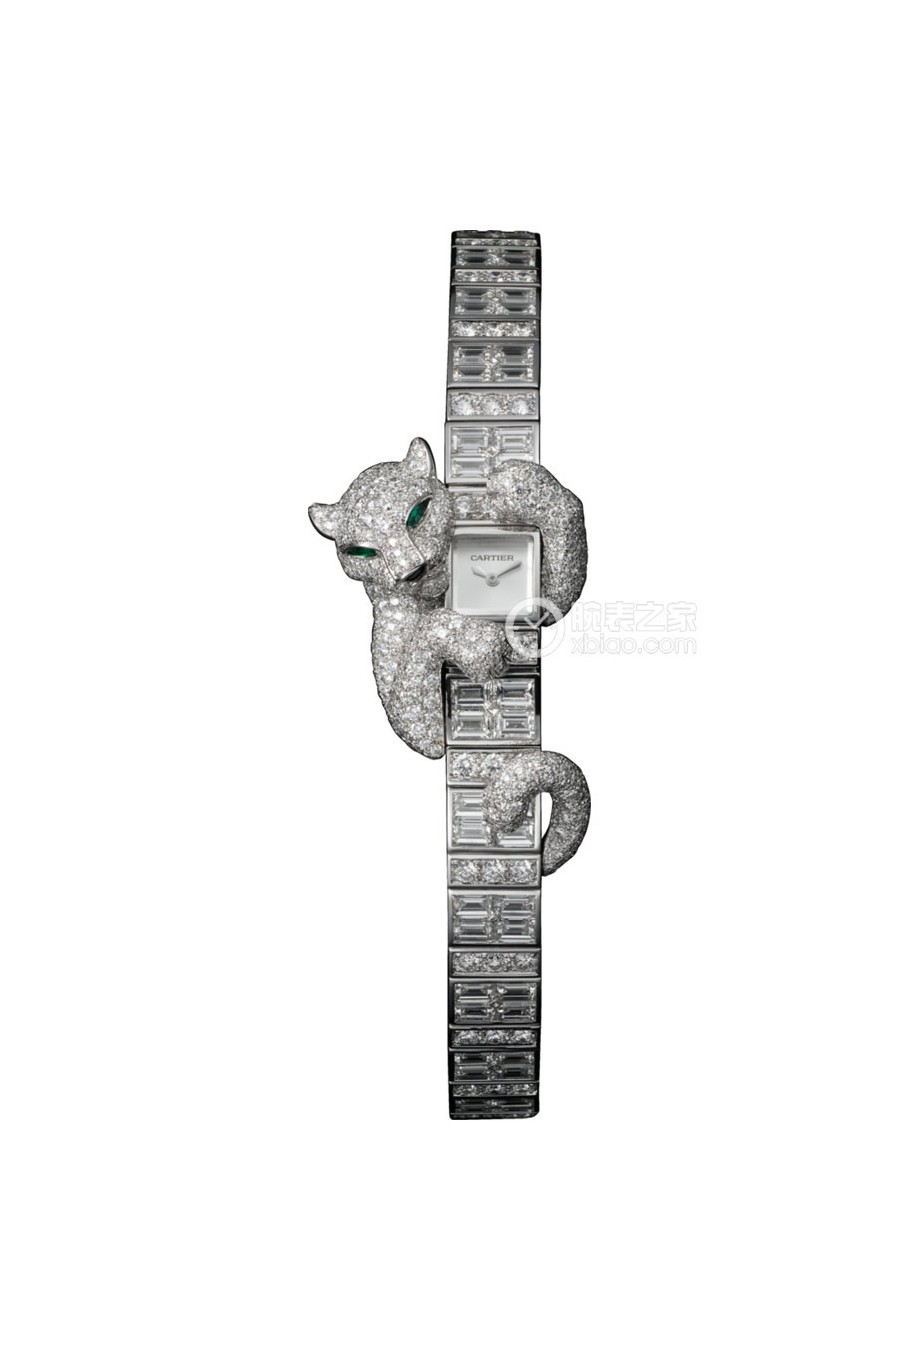 卡地亚创意宝石腕表系列HPI00627